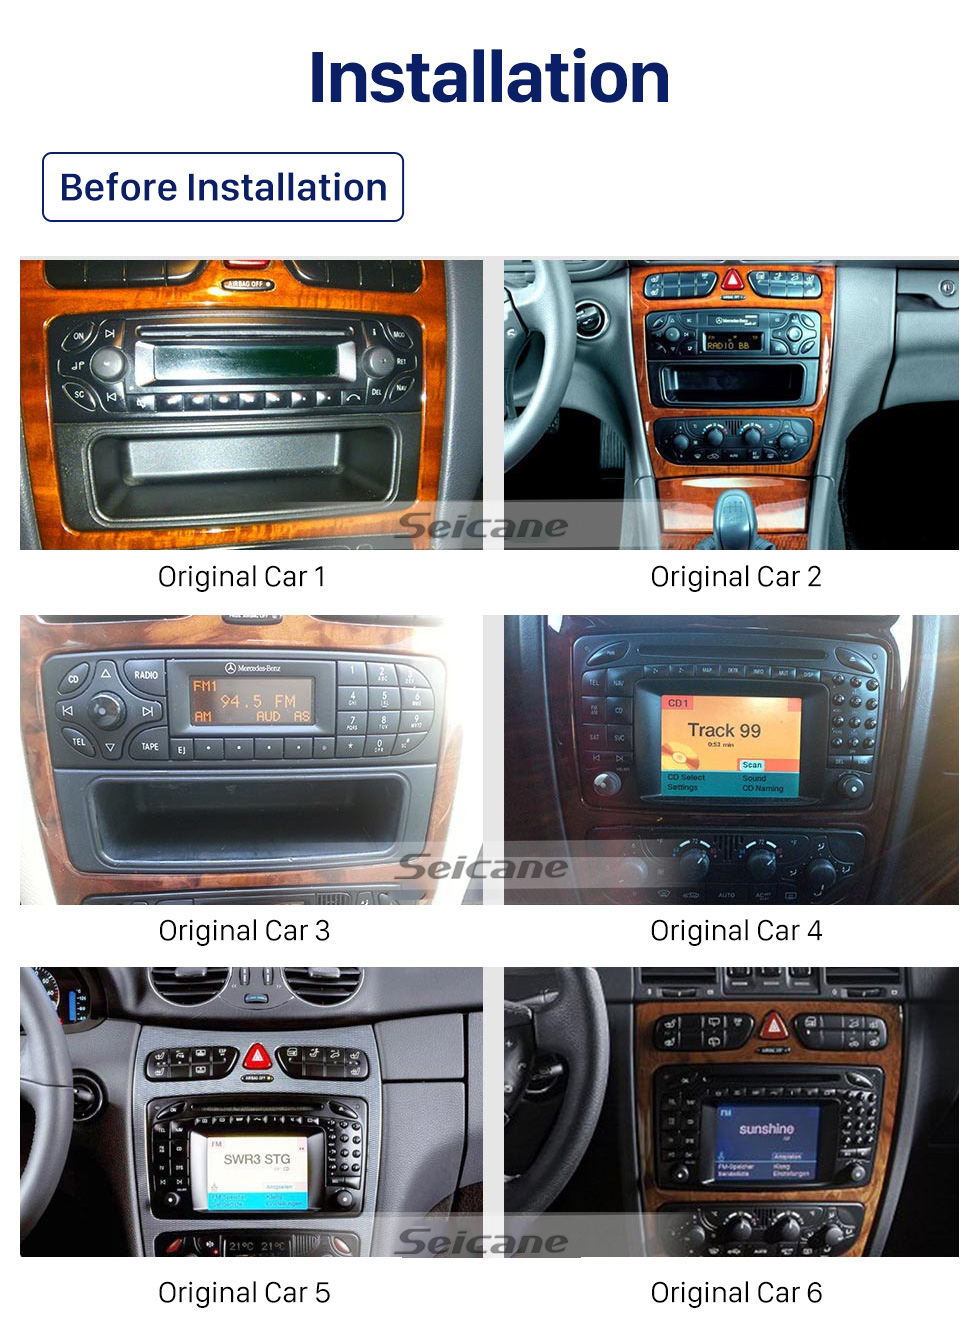 Seicane 10,1 pouces Android 10.0 pour 2002 2003 2004 Mercedes Benz Classe C W203 Radio Navigation GPS avec écran tactile HD Prise en charge Bluetooth Carplay DVR